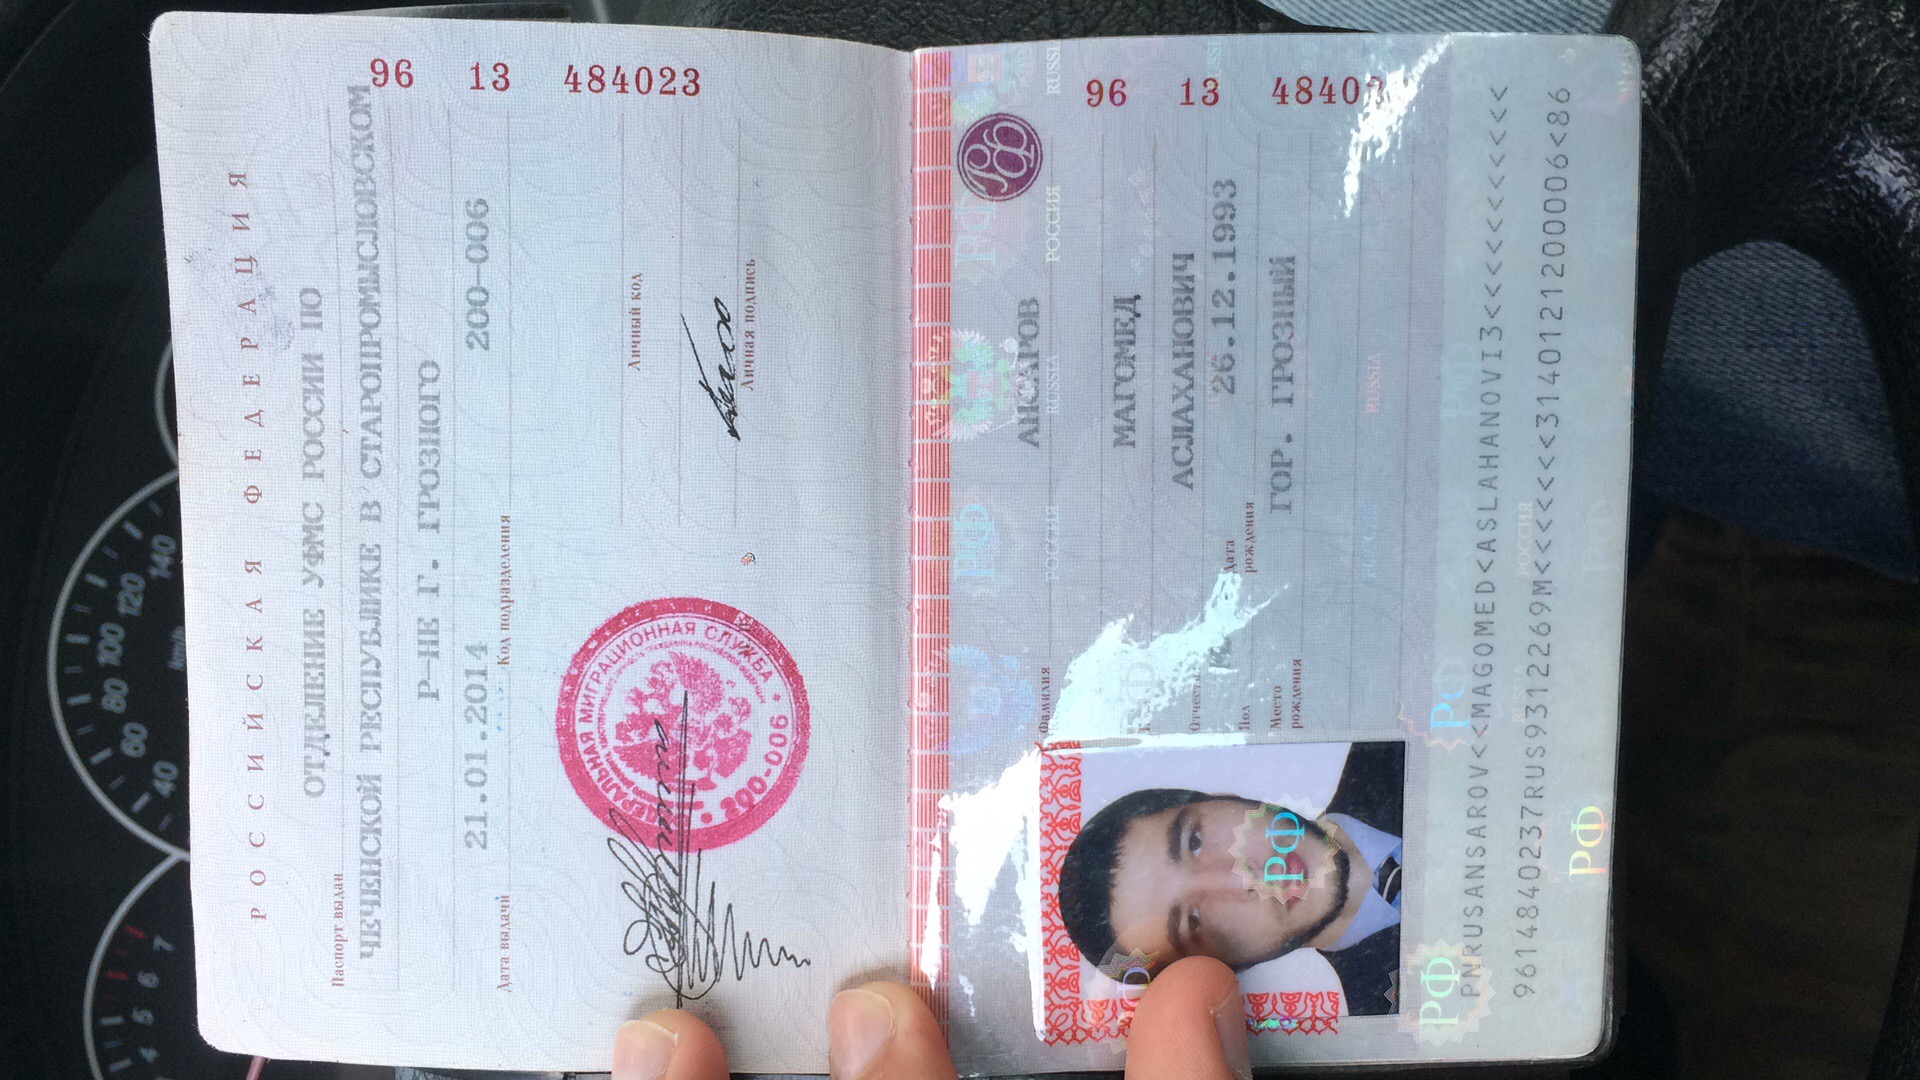 Фото на паспорт в махачкале адреса